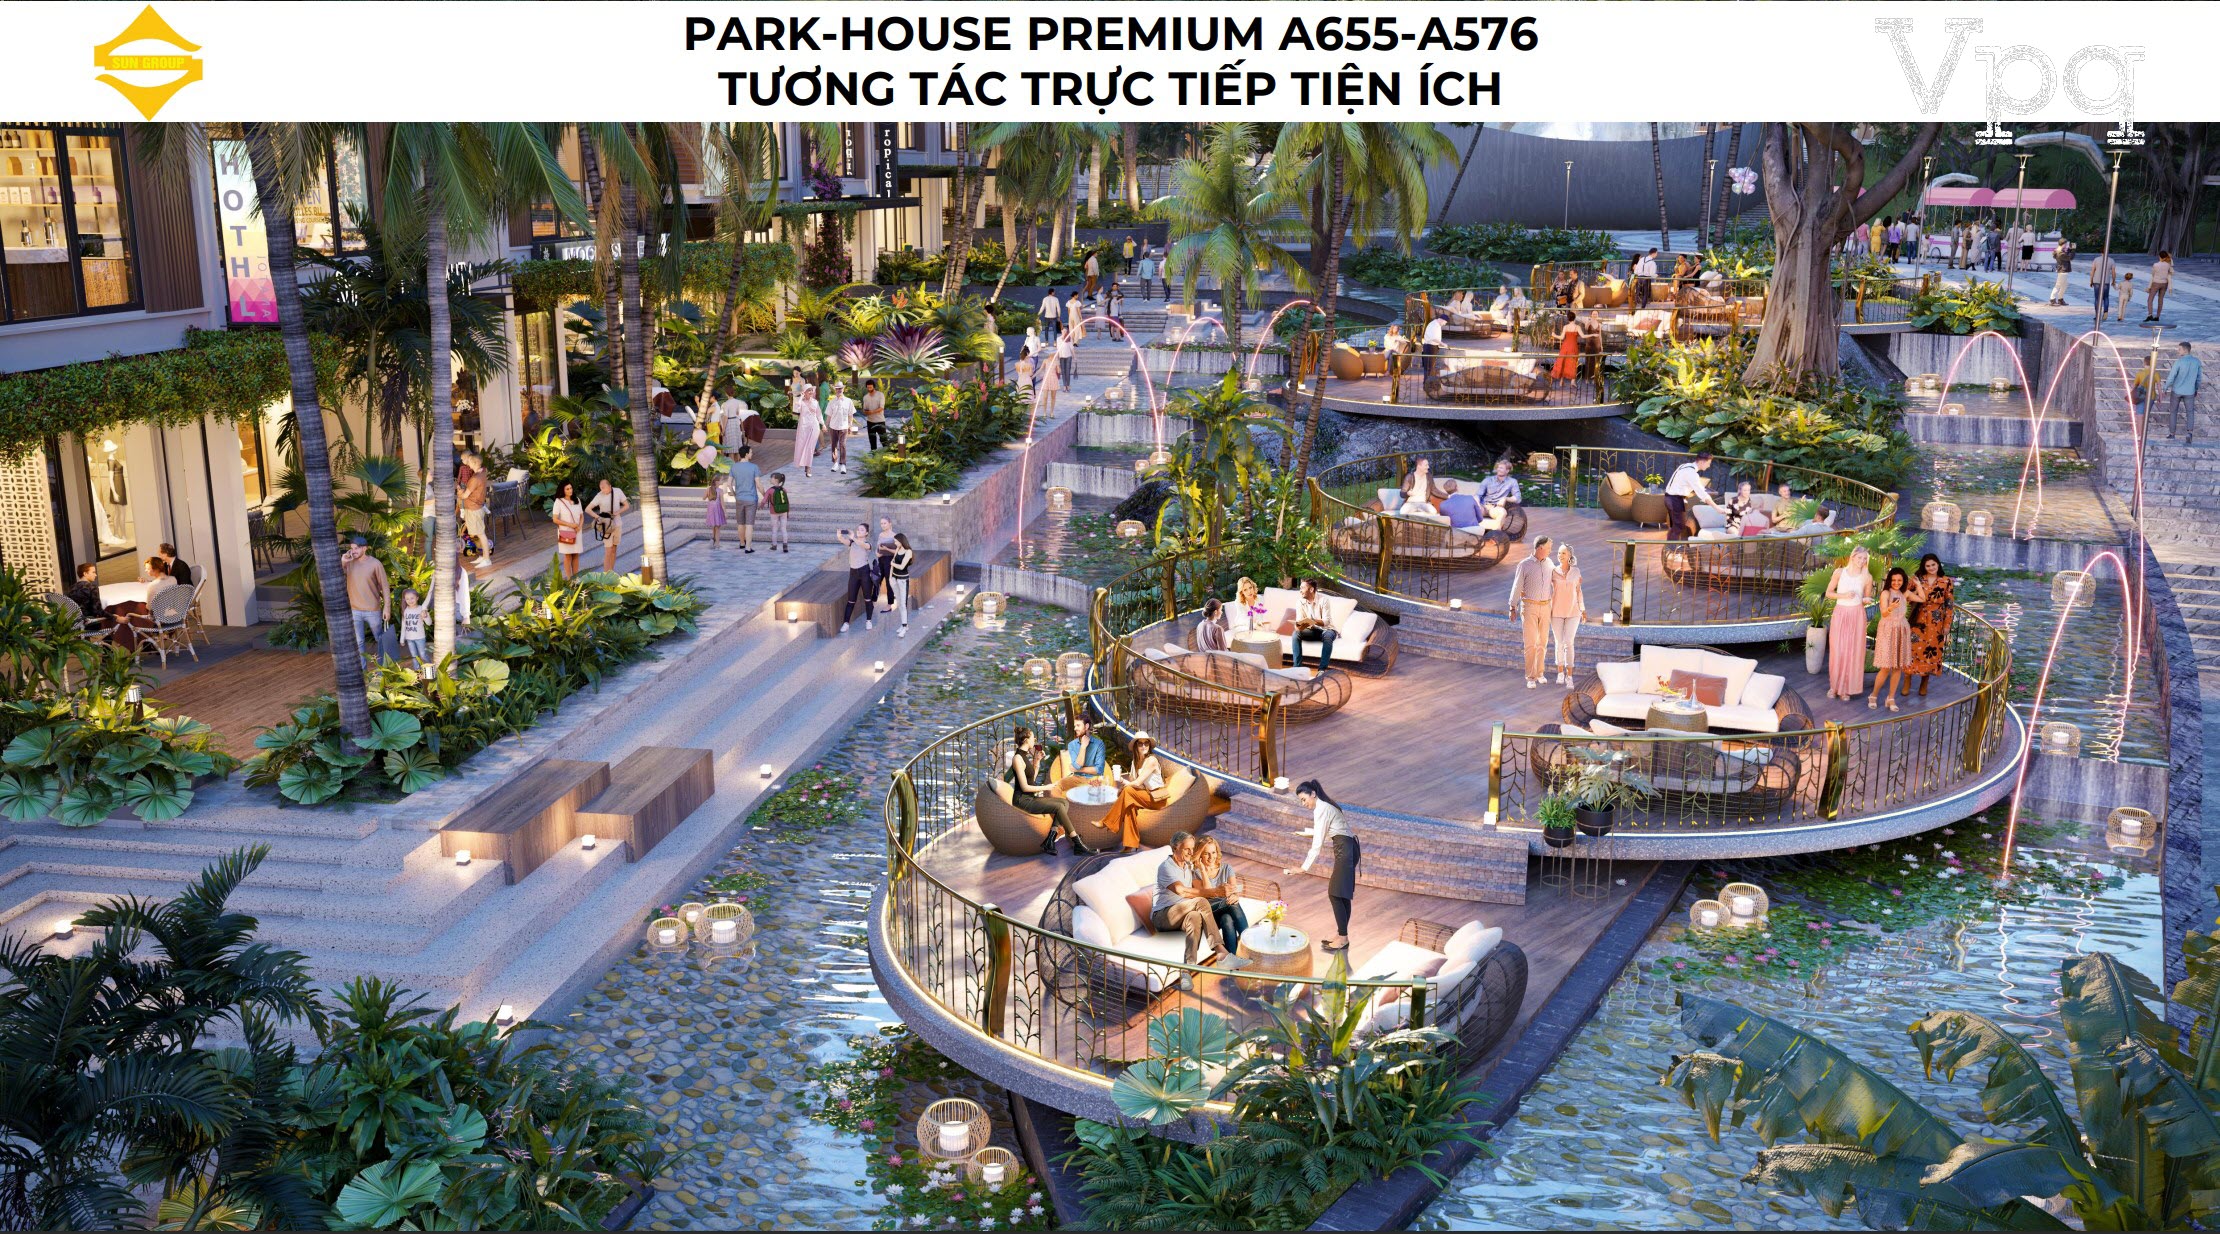 Park House Premium Makaio A655-A576 tương tác trực tiếp tiện ích